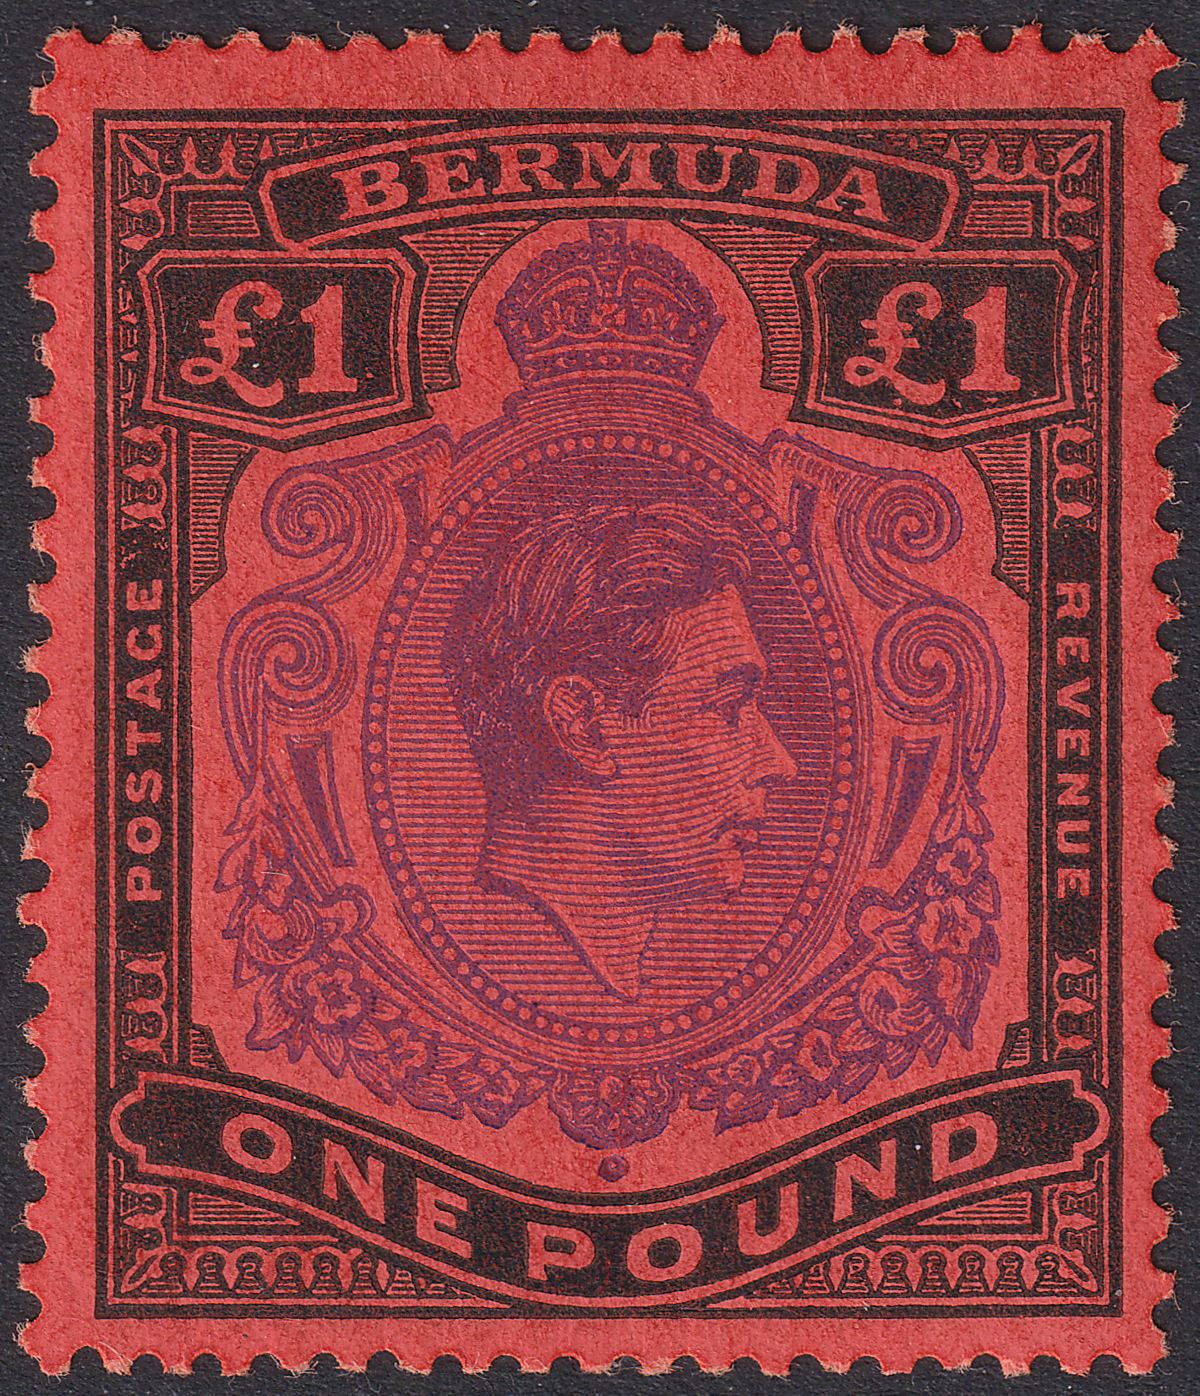 Bermuda 1952 KGVI £1 Violet and Black on Scarlet p13 Mint SG121d